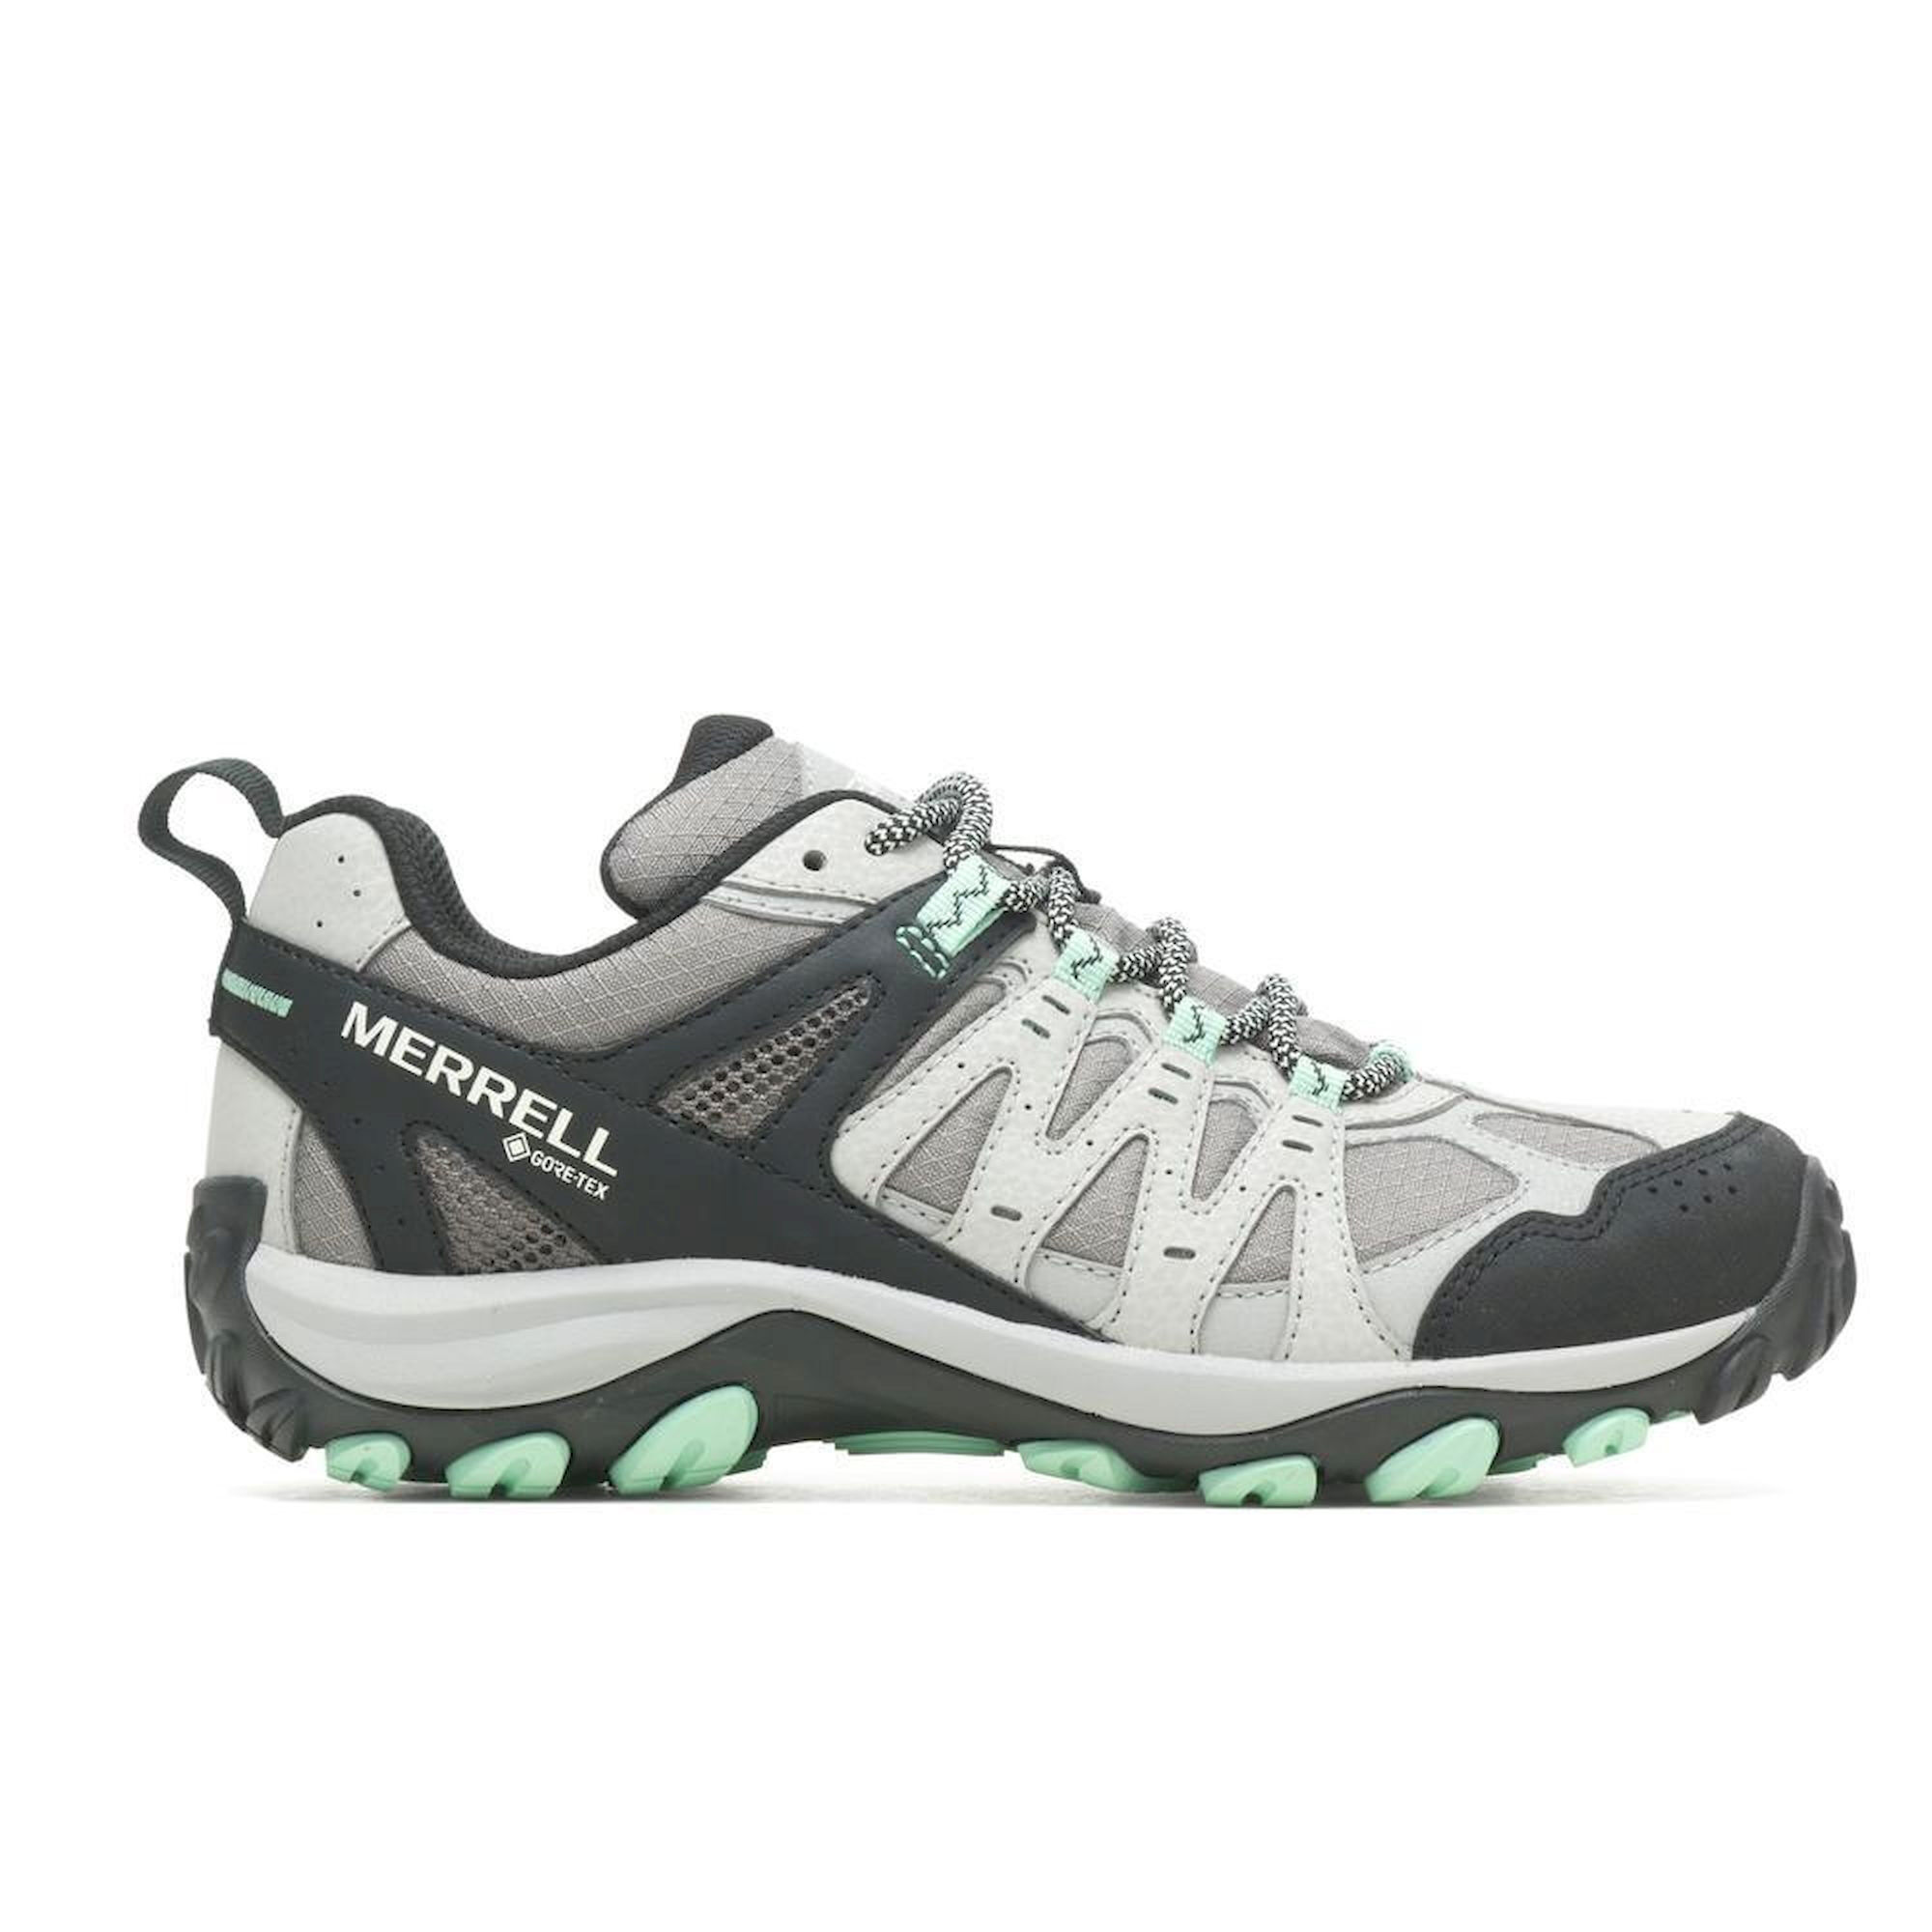 Merrell Accentor 3 Sport GTX - Hiking shoes - Women's